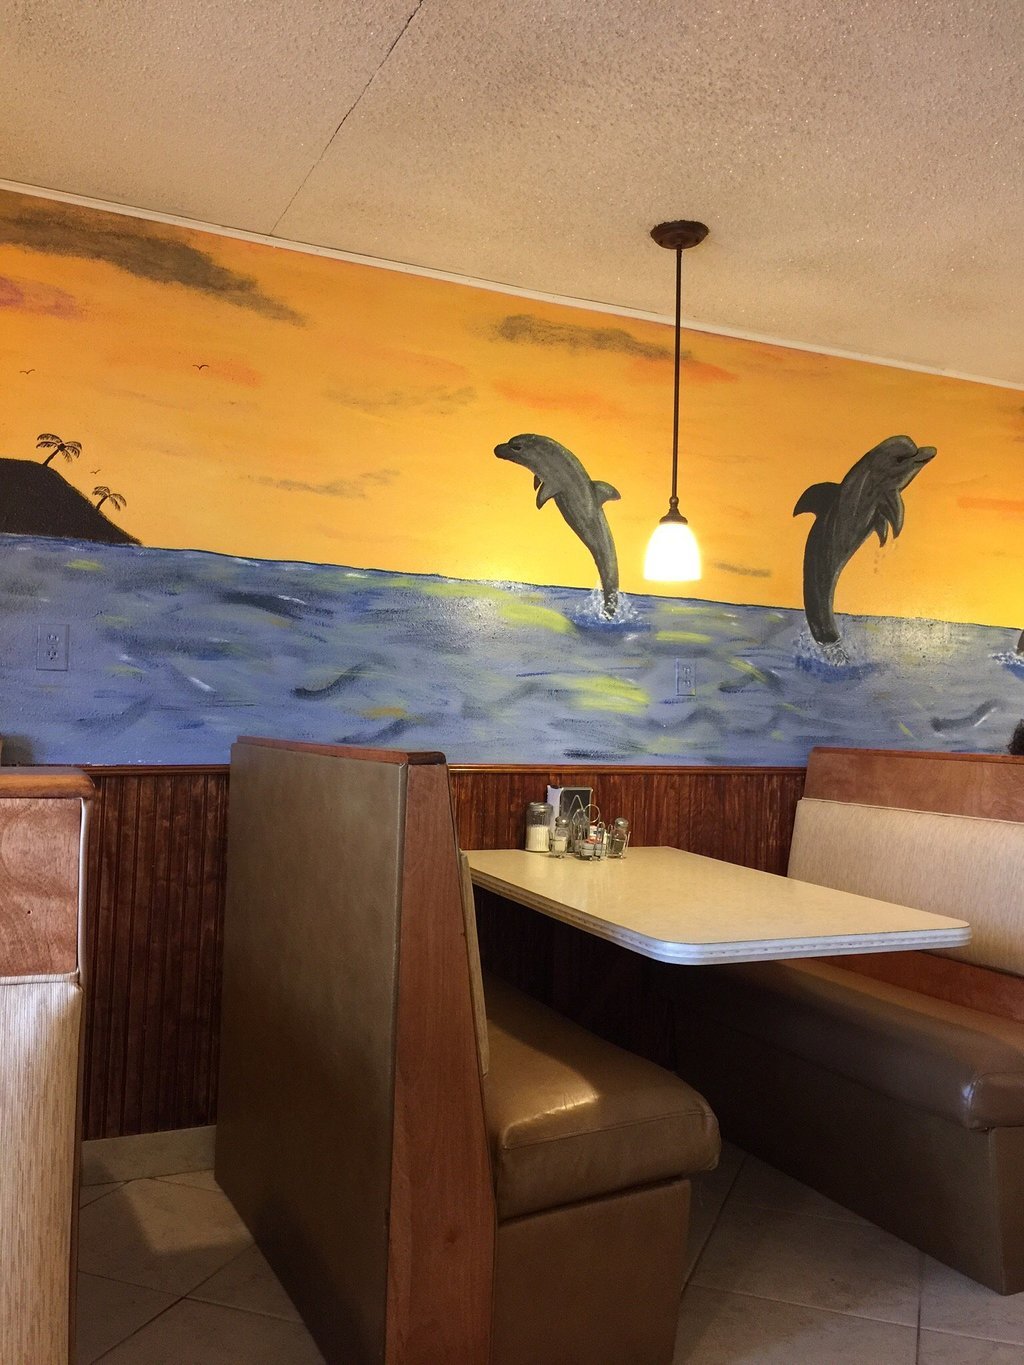 tde Dolphins Restaurant & Grill